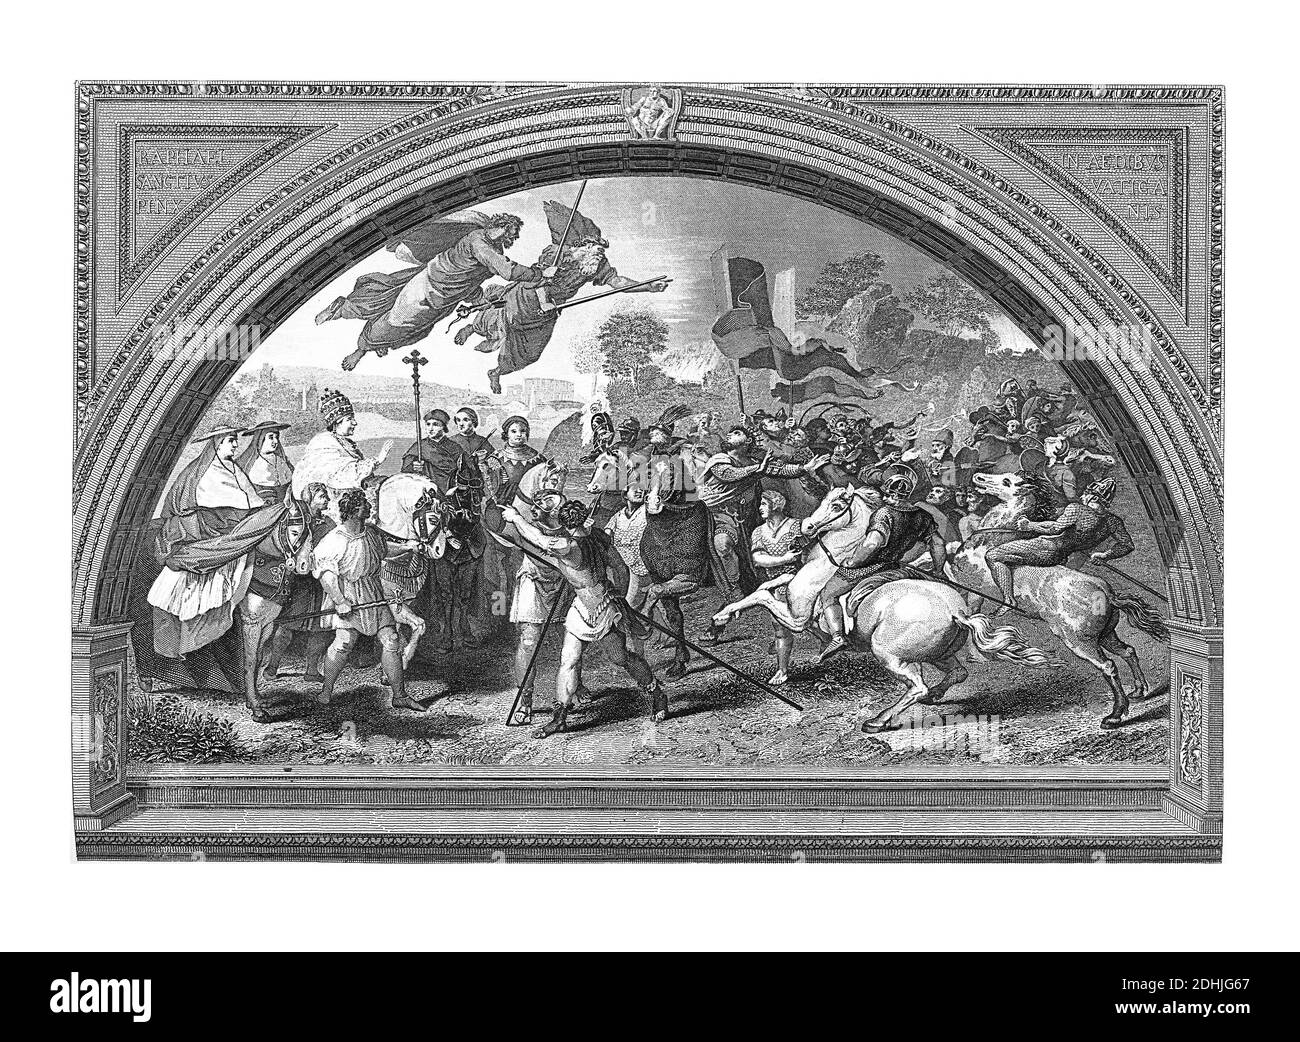 Originale Kunstwerke von Attila der Hunne, der Herrscher über die Hunnen von 434 bis zu seinem Tod in 453. In eine bildliche Geschichte der Großen der Welt natio veröffentlicht. Stockfoto